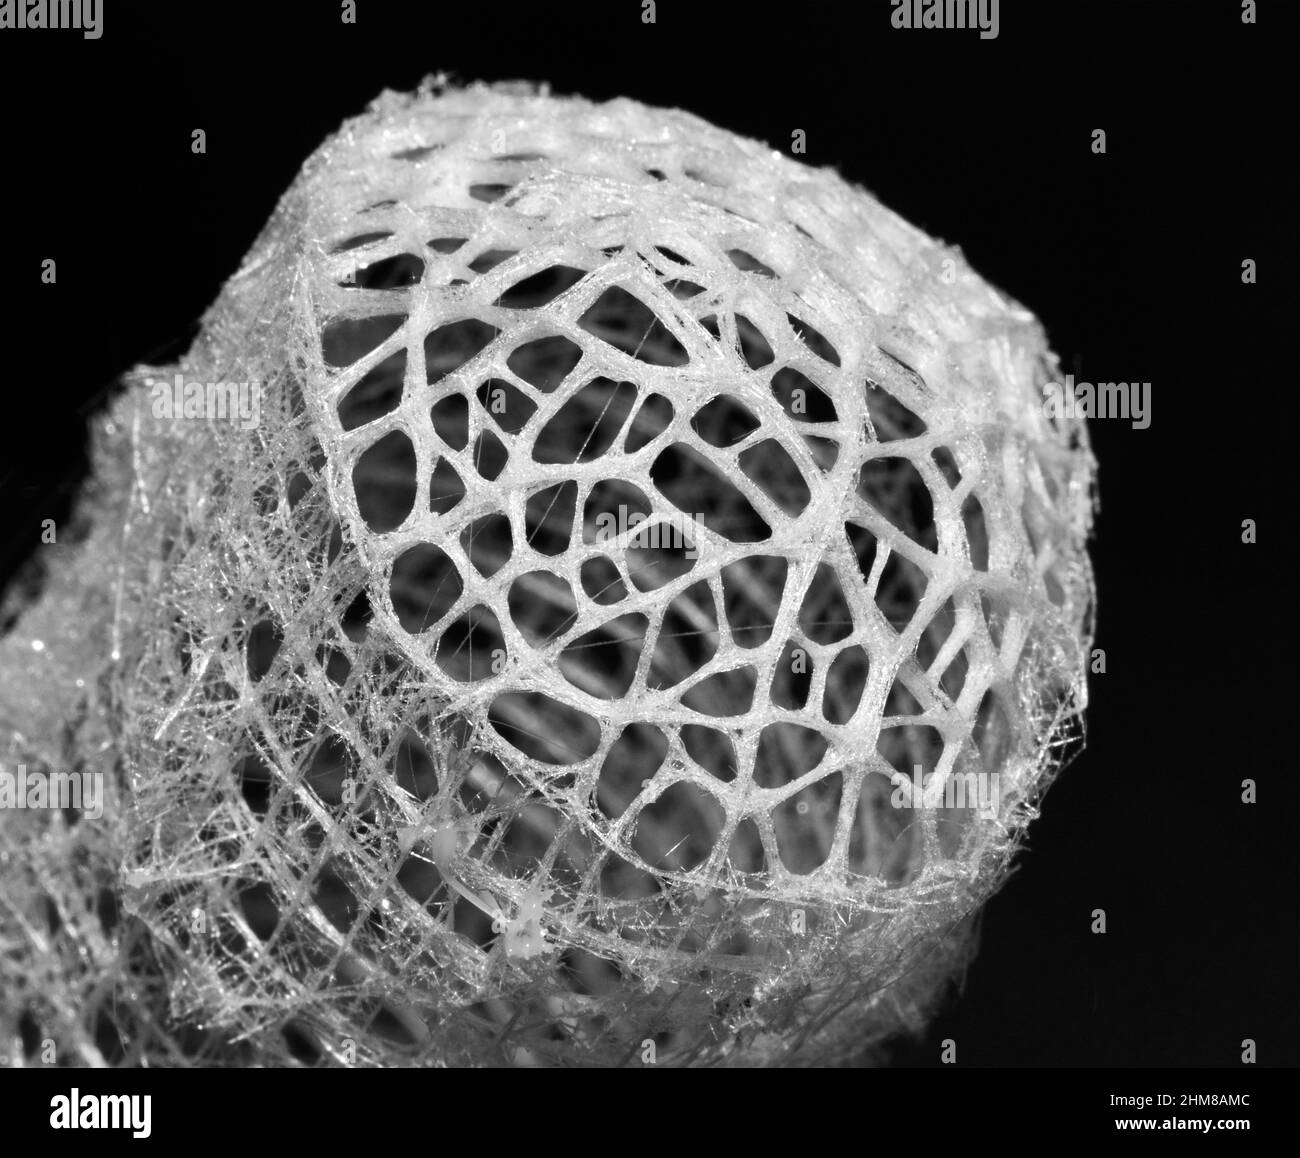 L'éponge en verre extrait l'acide silicique de l'eau de mer et fait tourner un réseau délicat de fibres épiculaires siliceuses pour construire un cadre de support délicat. Banque D'Images